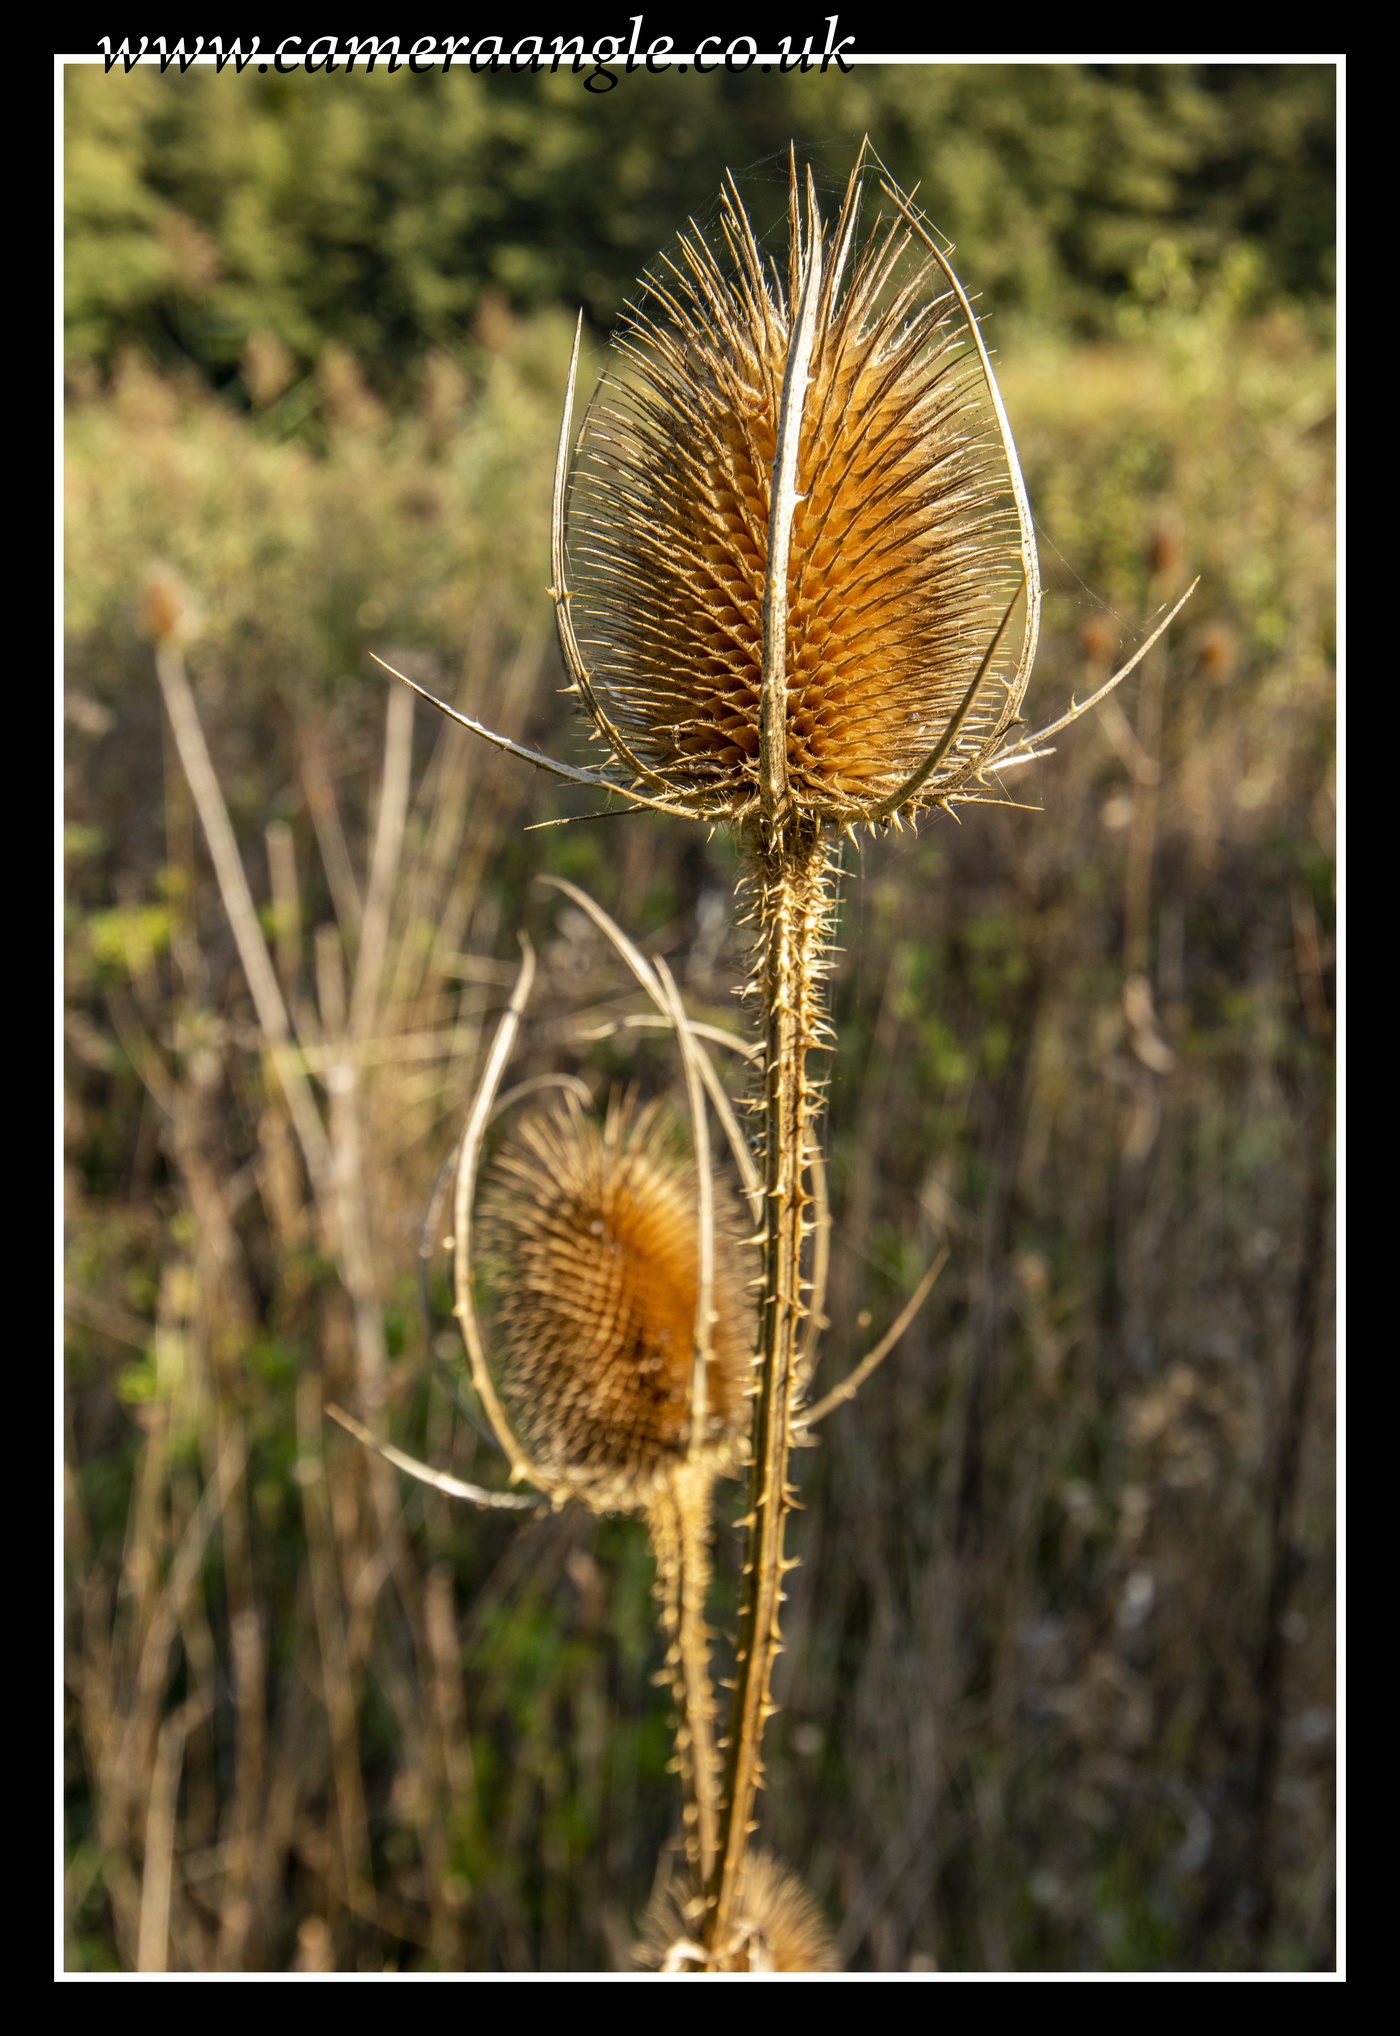 Prickly!
Keywords: NATS Nature Park